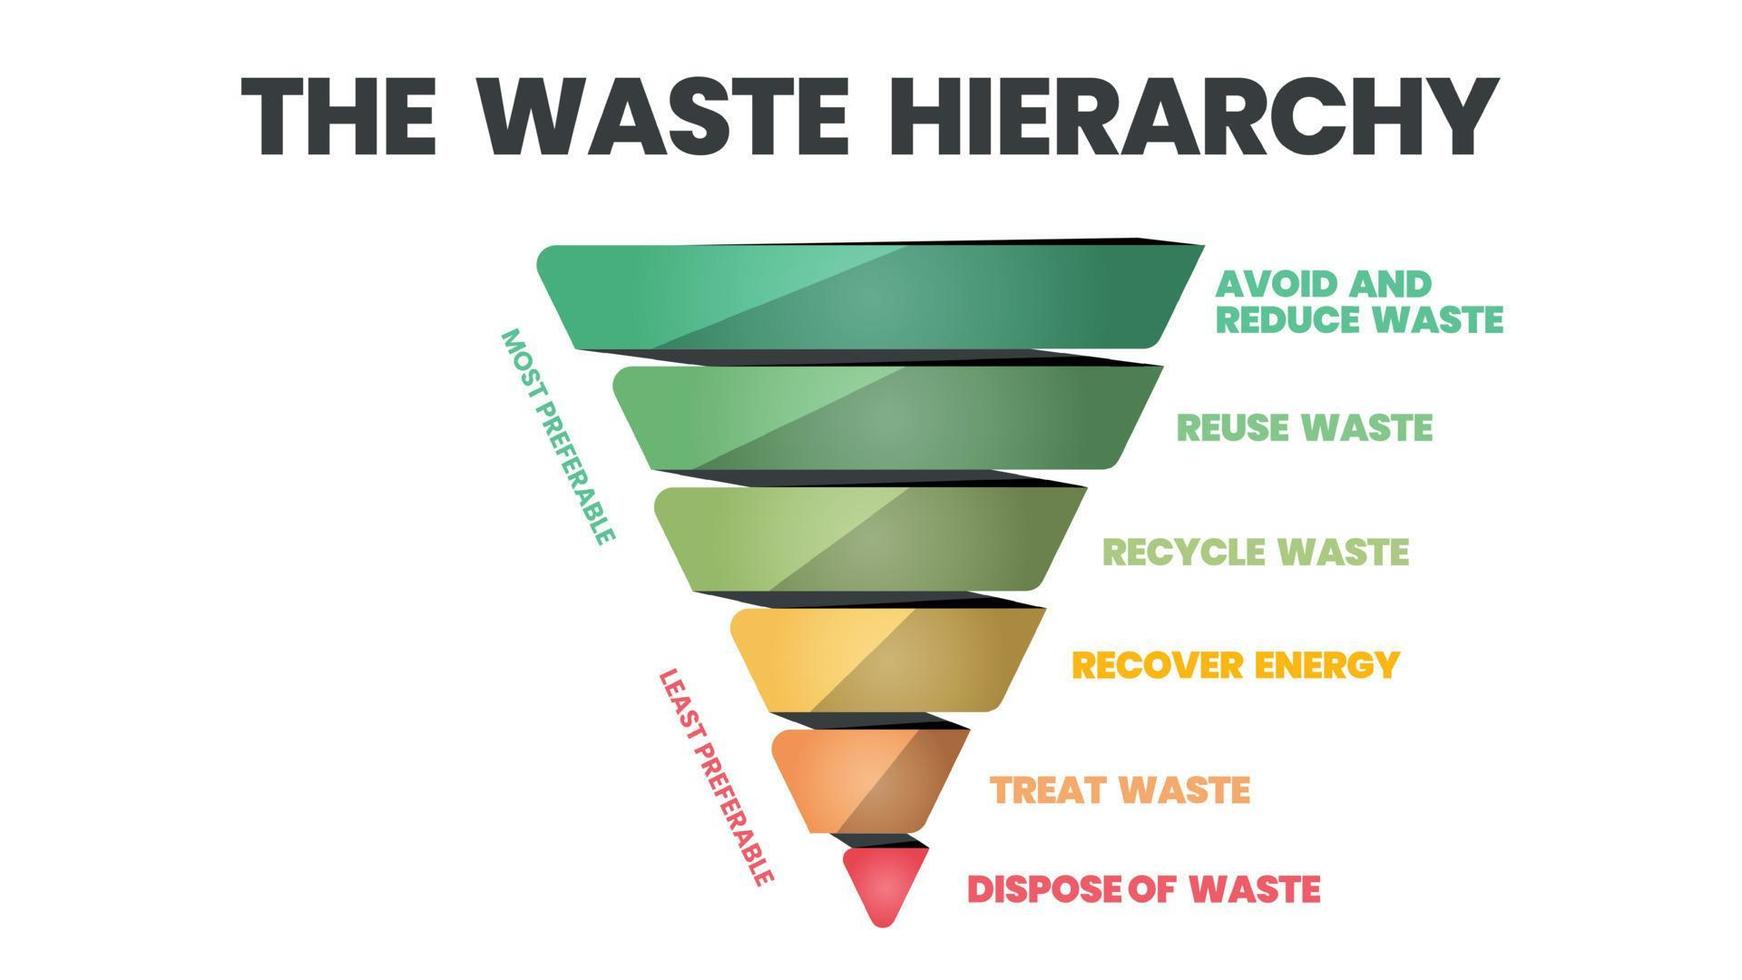 le vecteur de la hiérarchie des déchets est un cône d'illustration dans l'évaluation des procédés préservant l'environnement aux côtés de la consommation de ressources et d'énergie. un diagramme en entonnoir comporte 6 étapes de gestion des déchets